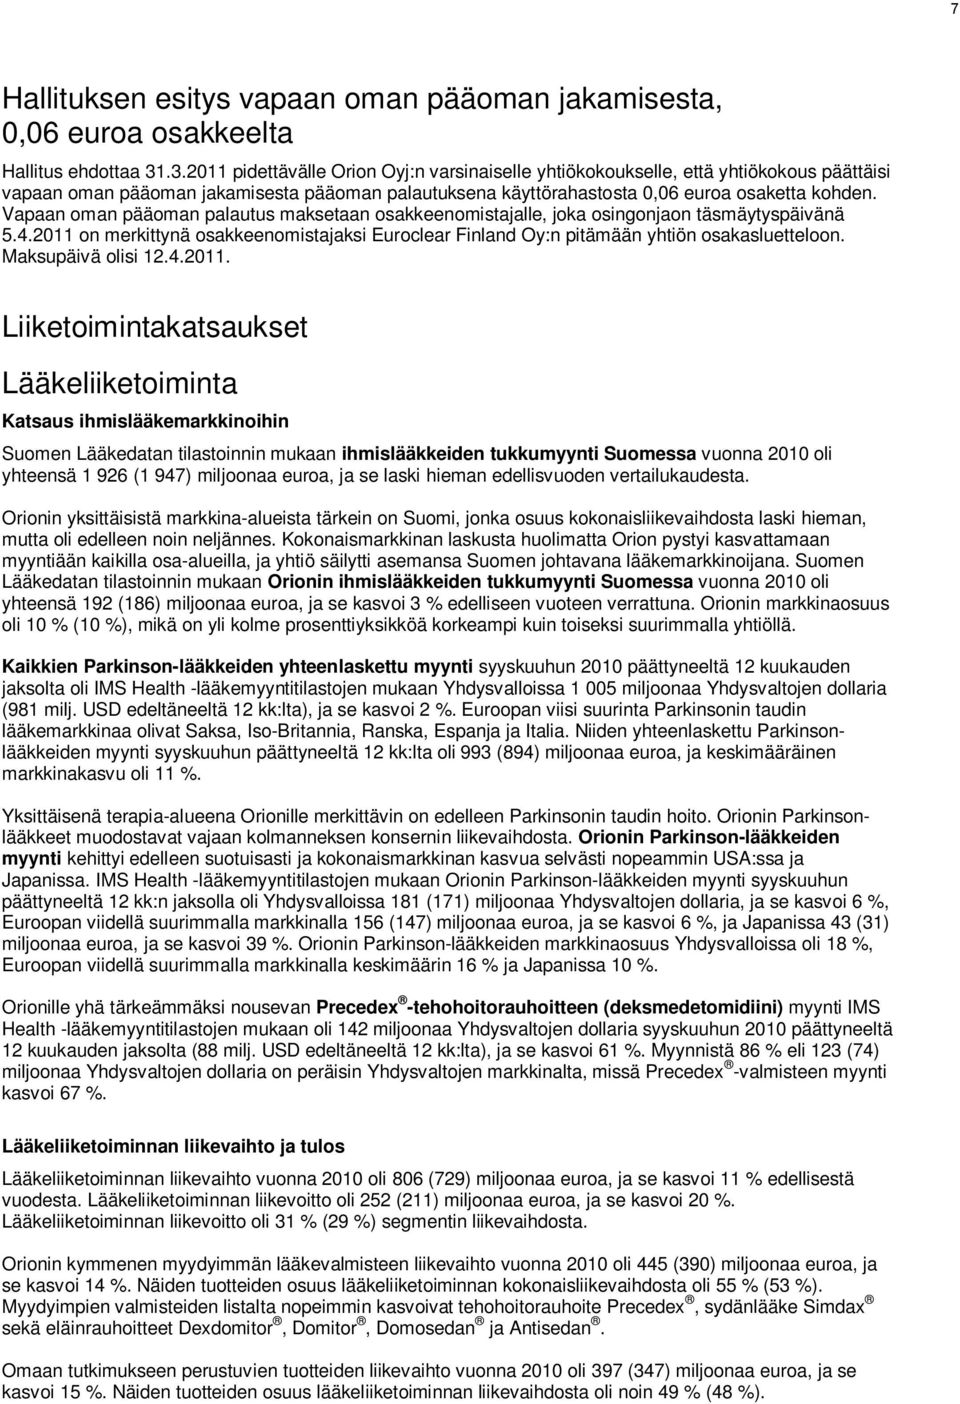 Vapaan oman pääoman palautus maksetaan osakkeenomistajalle, joka osingonjaon täsmäytyspäivänä 5.4.2011 on merkittynä osakkeenomistajaksi Euroclear Finland Oy:n pitämään yhtiön osakasluetteloon.